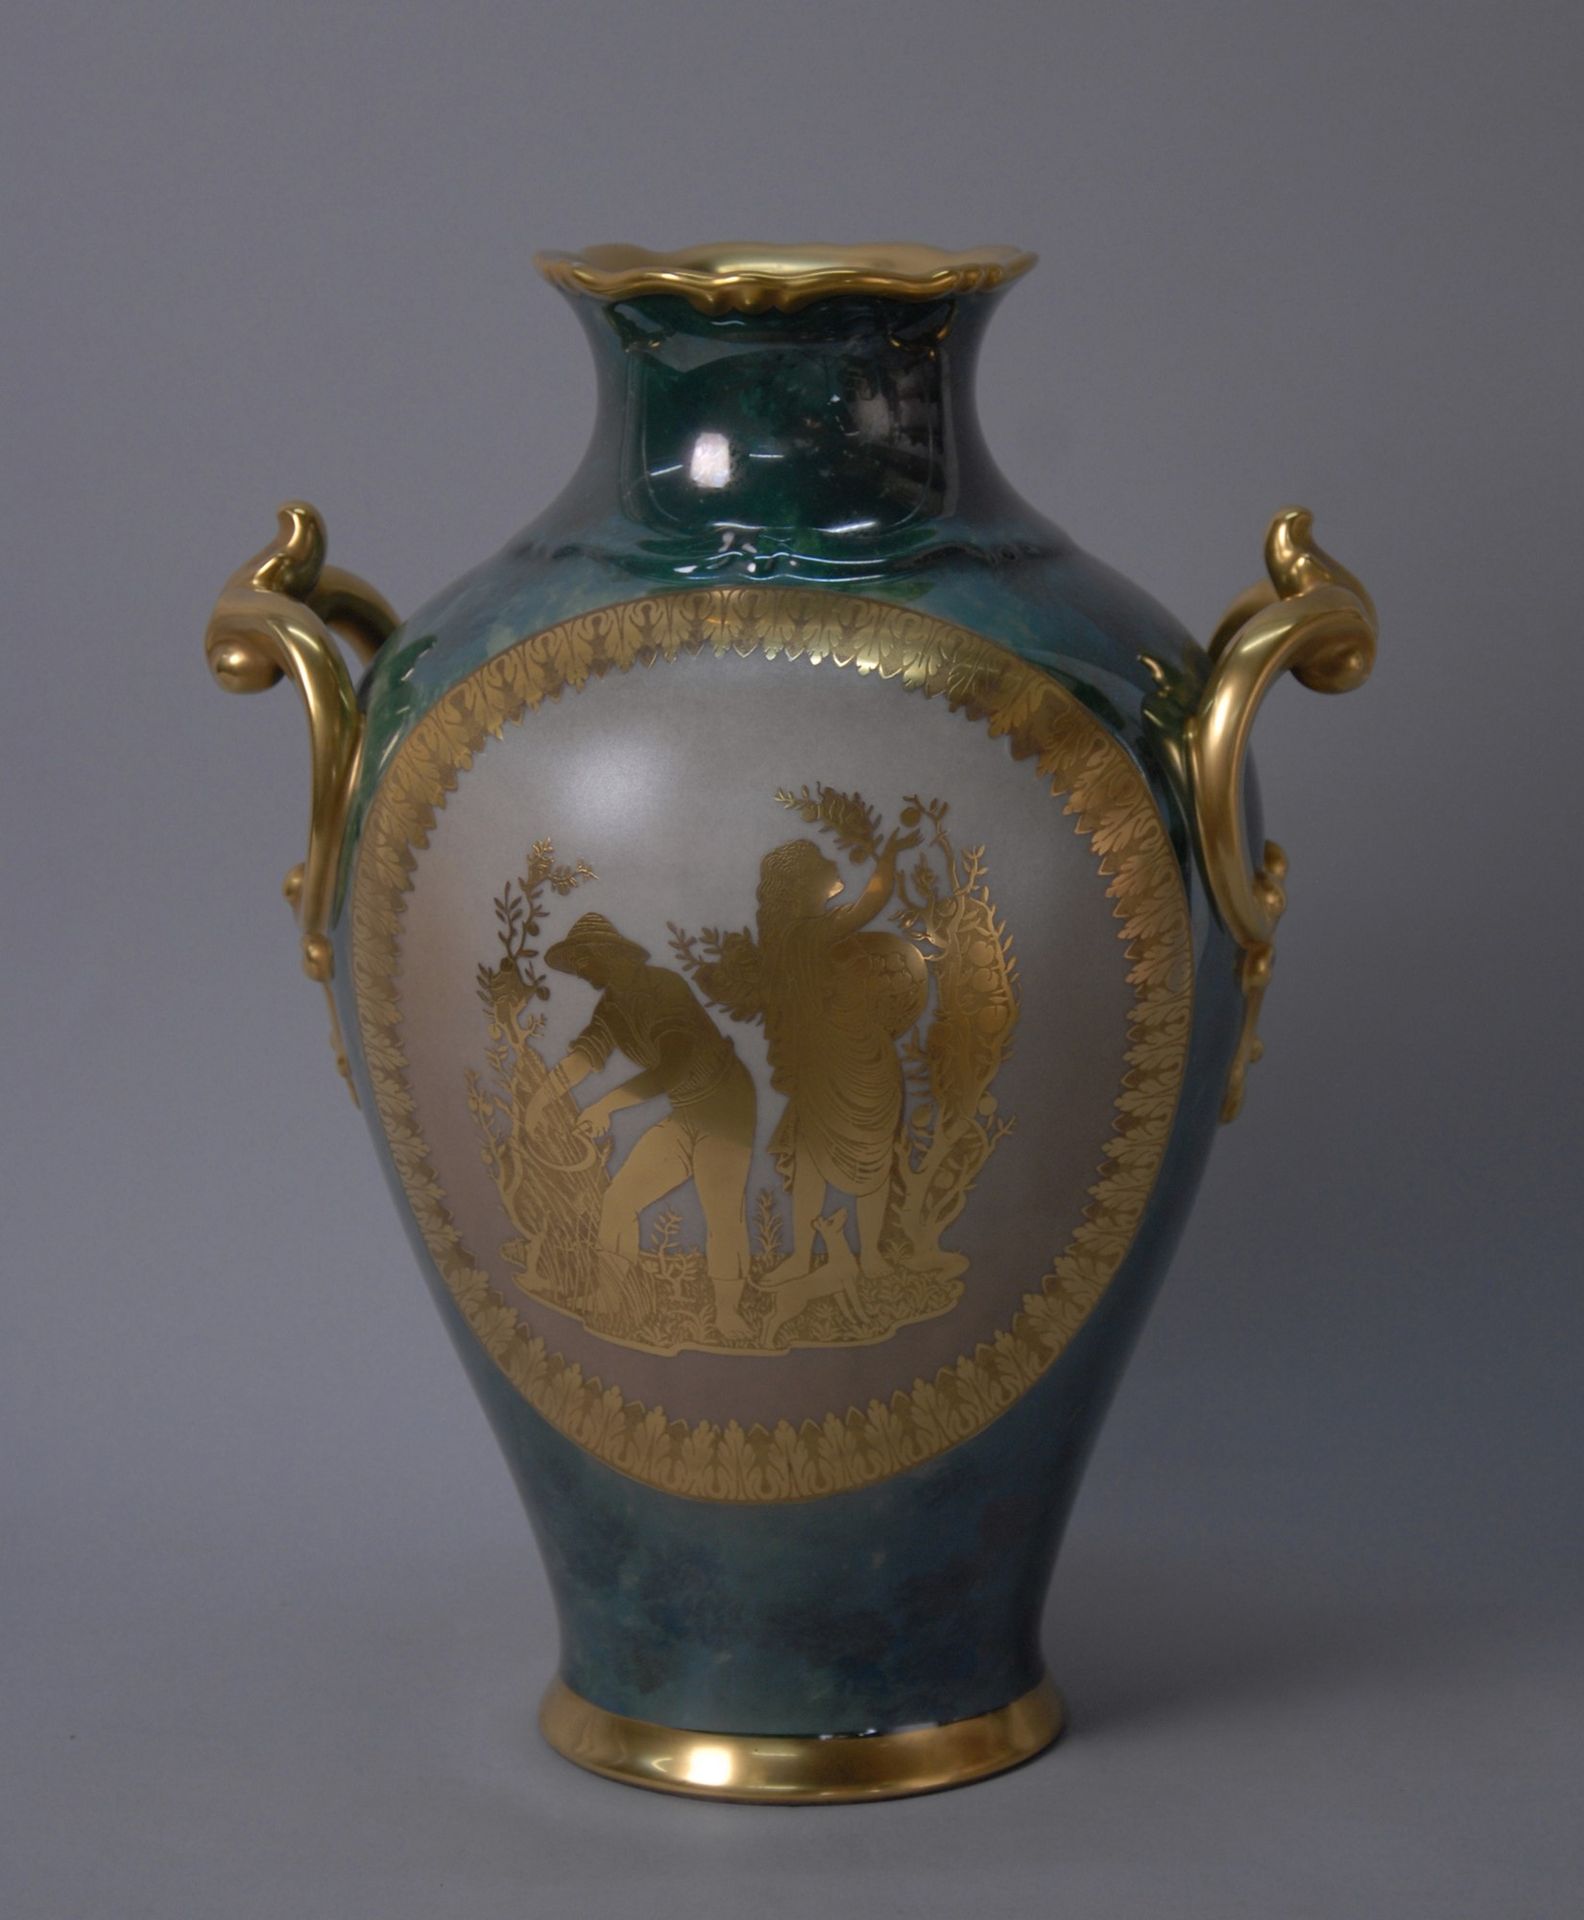 Porcelain vase. THOMAS BAVARIA 多色瓷花瓶，纯金装饰。底座下方有签名THOMAS BAVARIA。德国。20世纪。 高约37厘米。